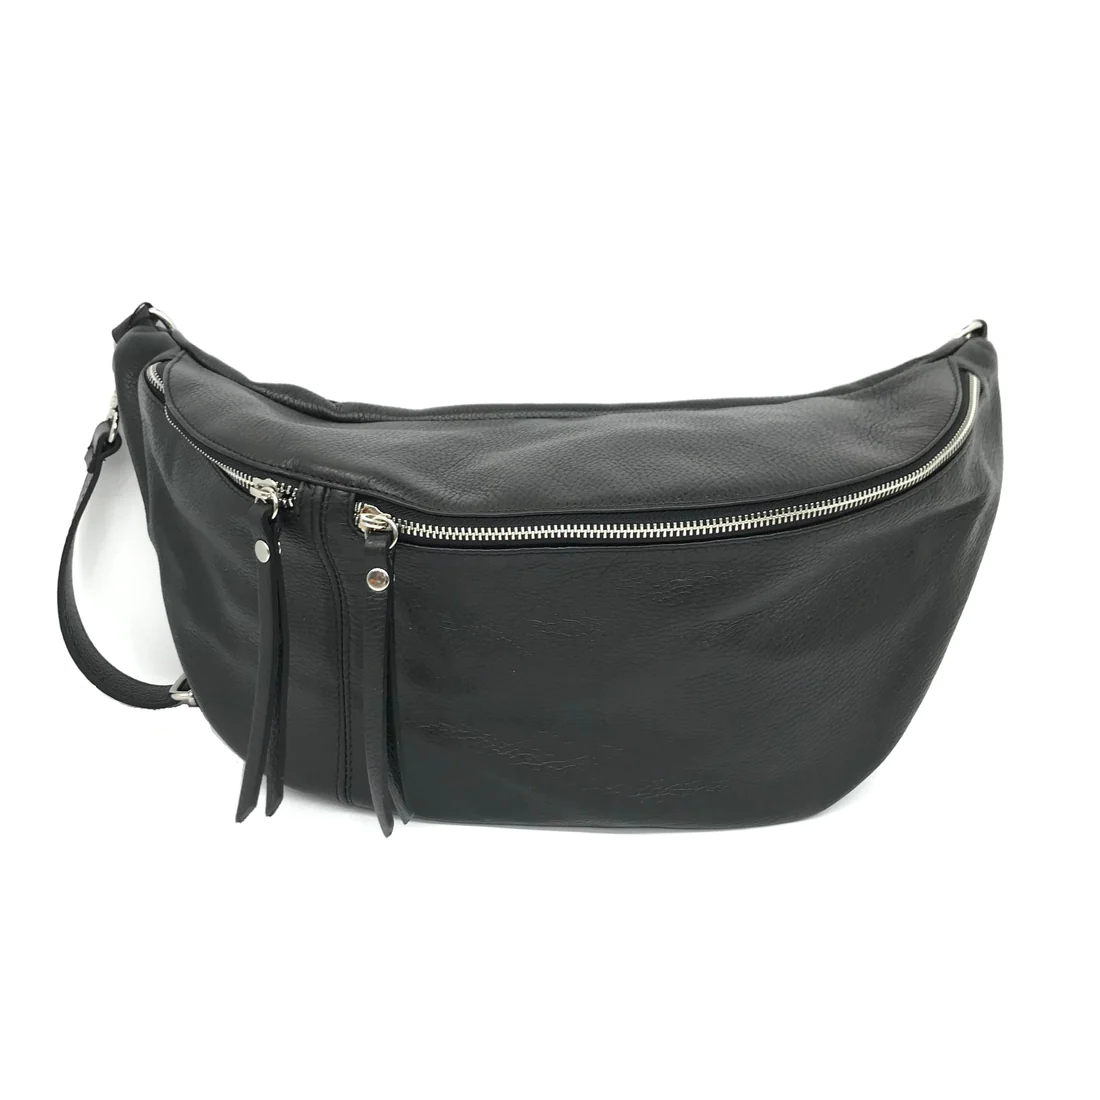 Flor Leather Fanny pack/ sling